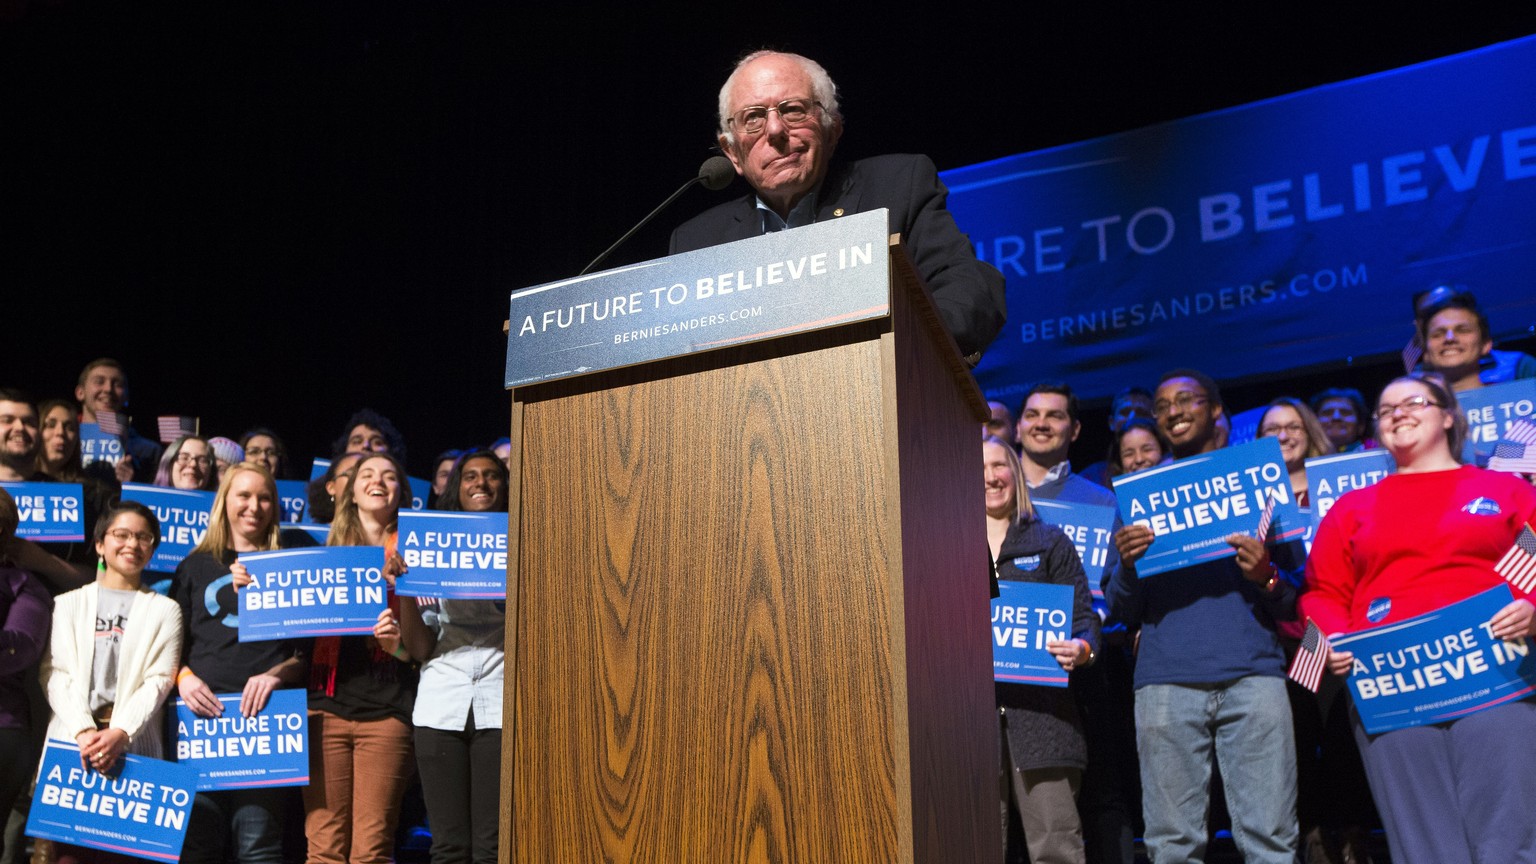 Die Jungen lieben ihn: Bernie Sanders bei einem Auftritt in New Hampshire.